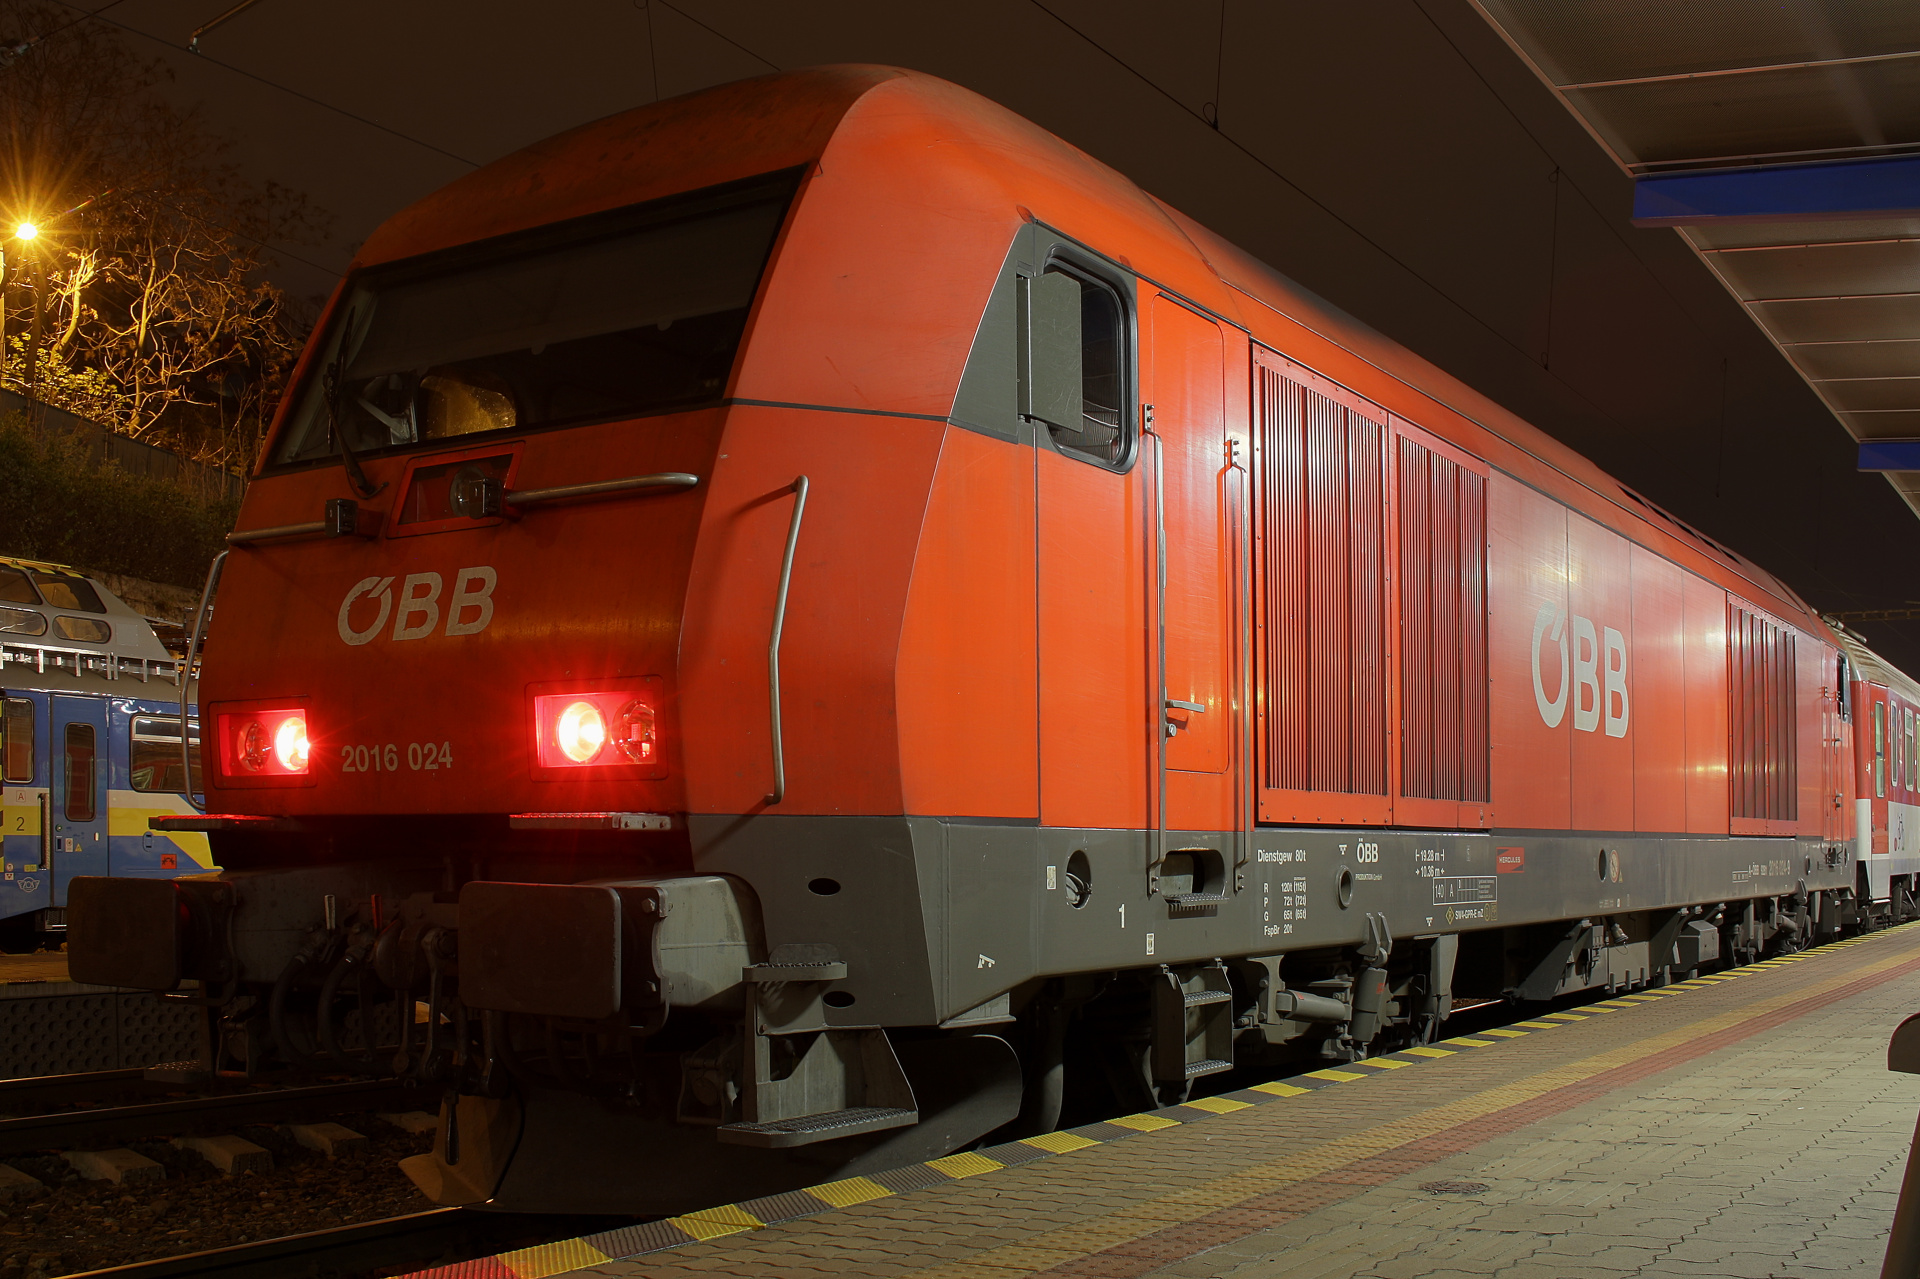 Siemens Eurorunner 20 2016 024 (Hercules) (Podróże » Bratysława » Pojazdy » Pociągi i lokomotywy)